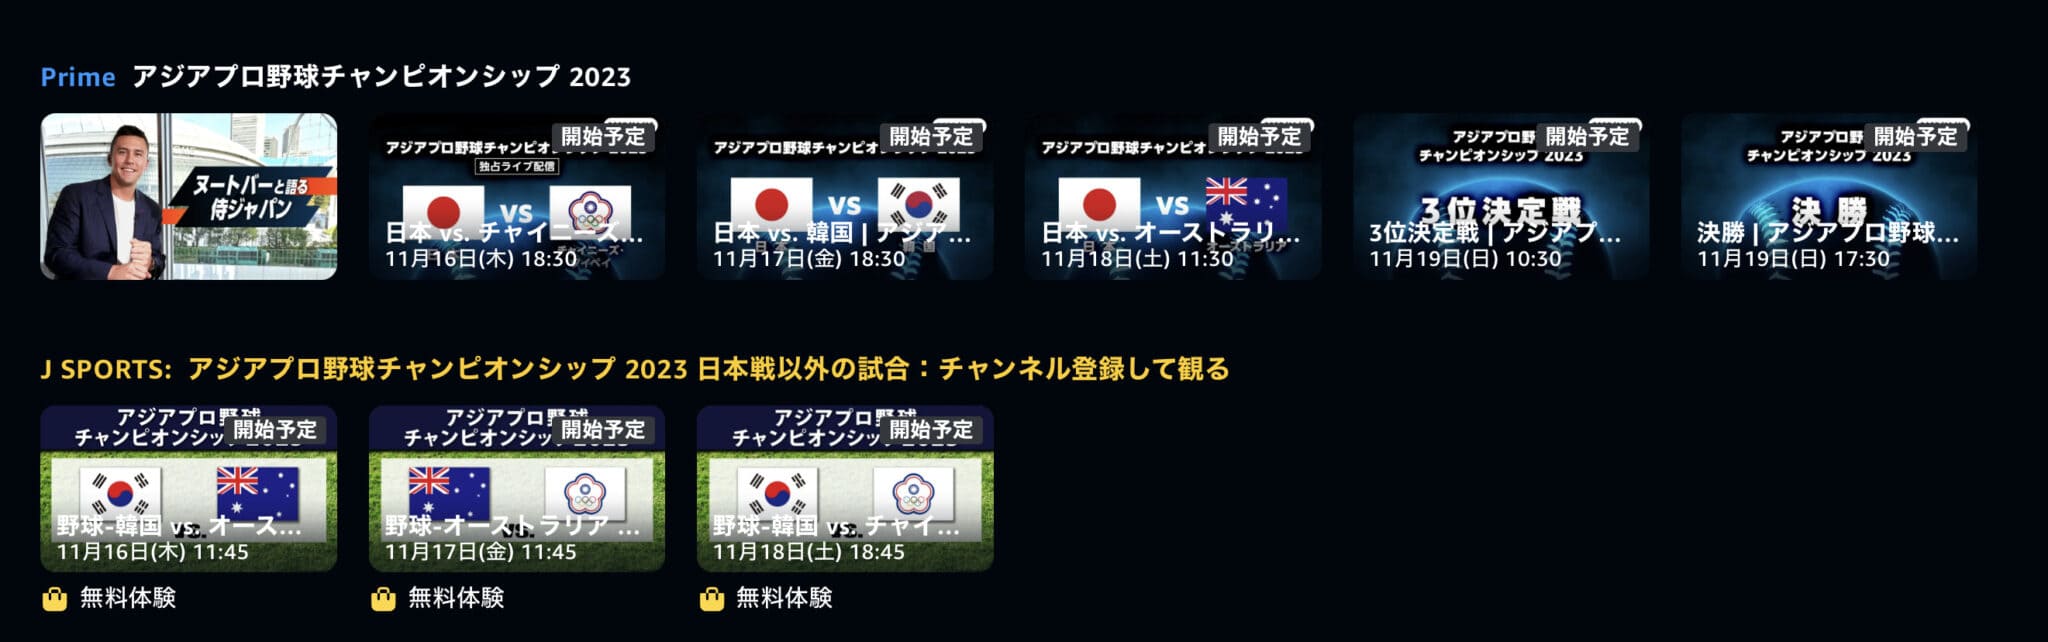 「アジアプロ野球チャンピオンシップ2023」の試合日程